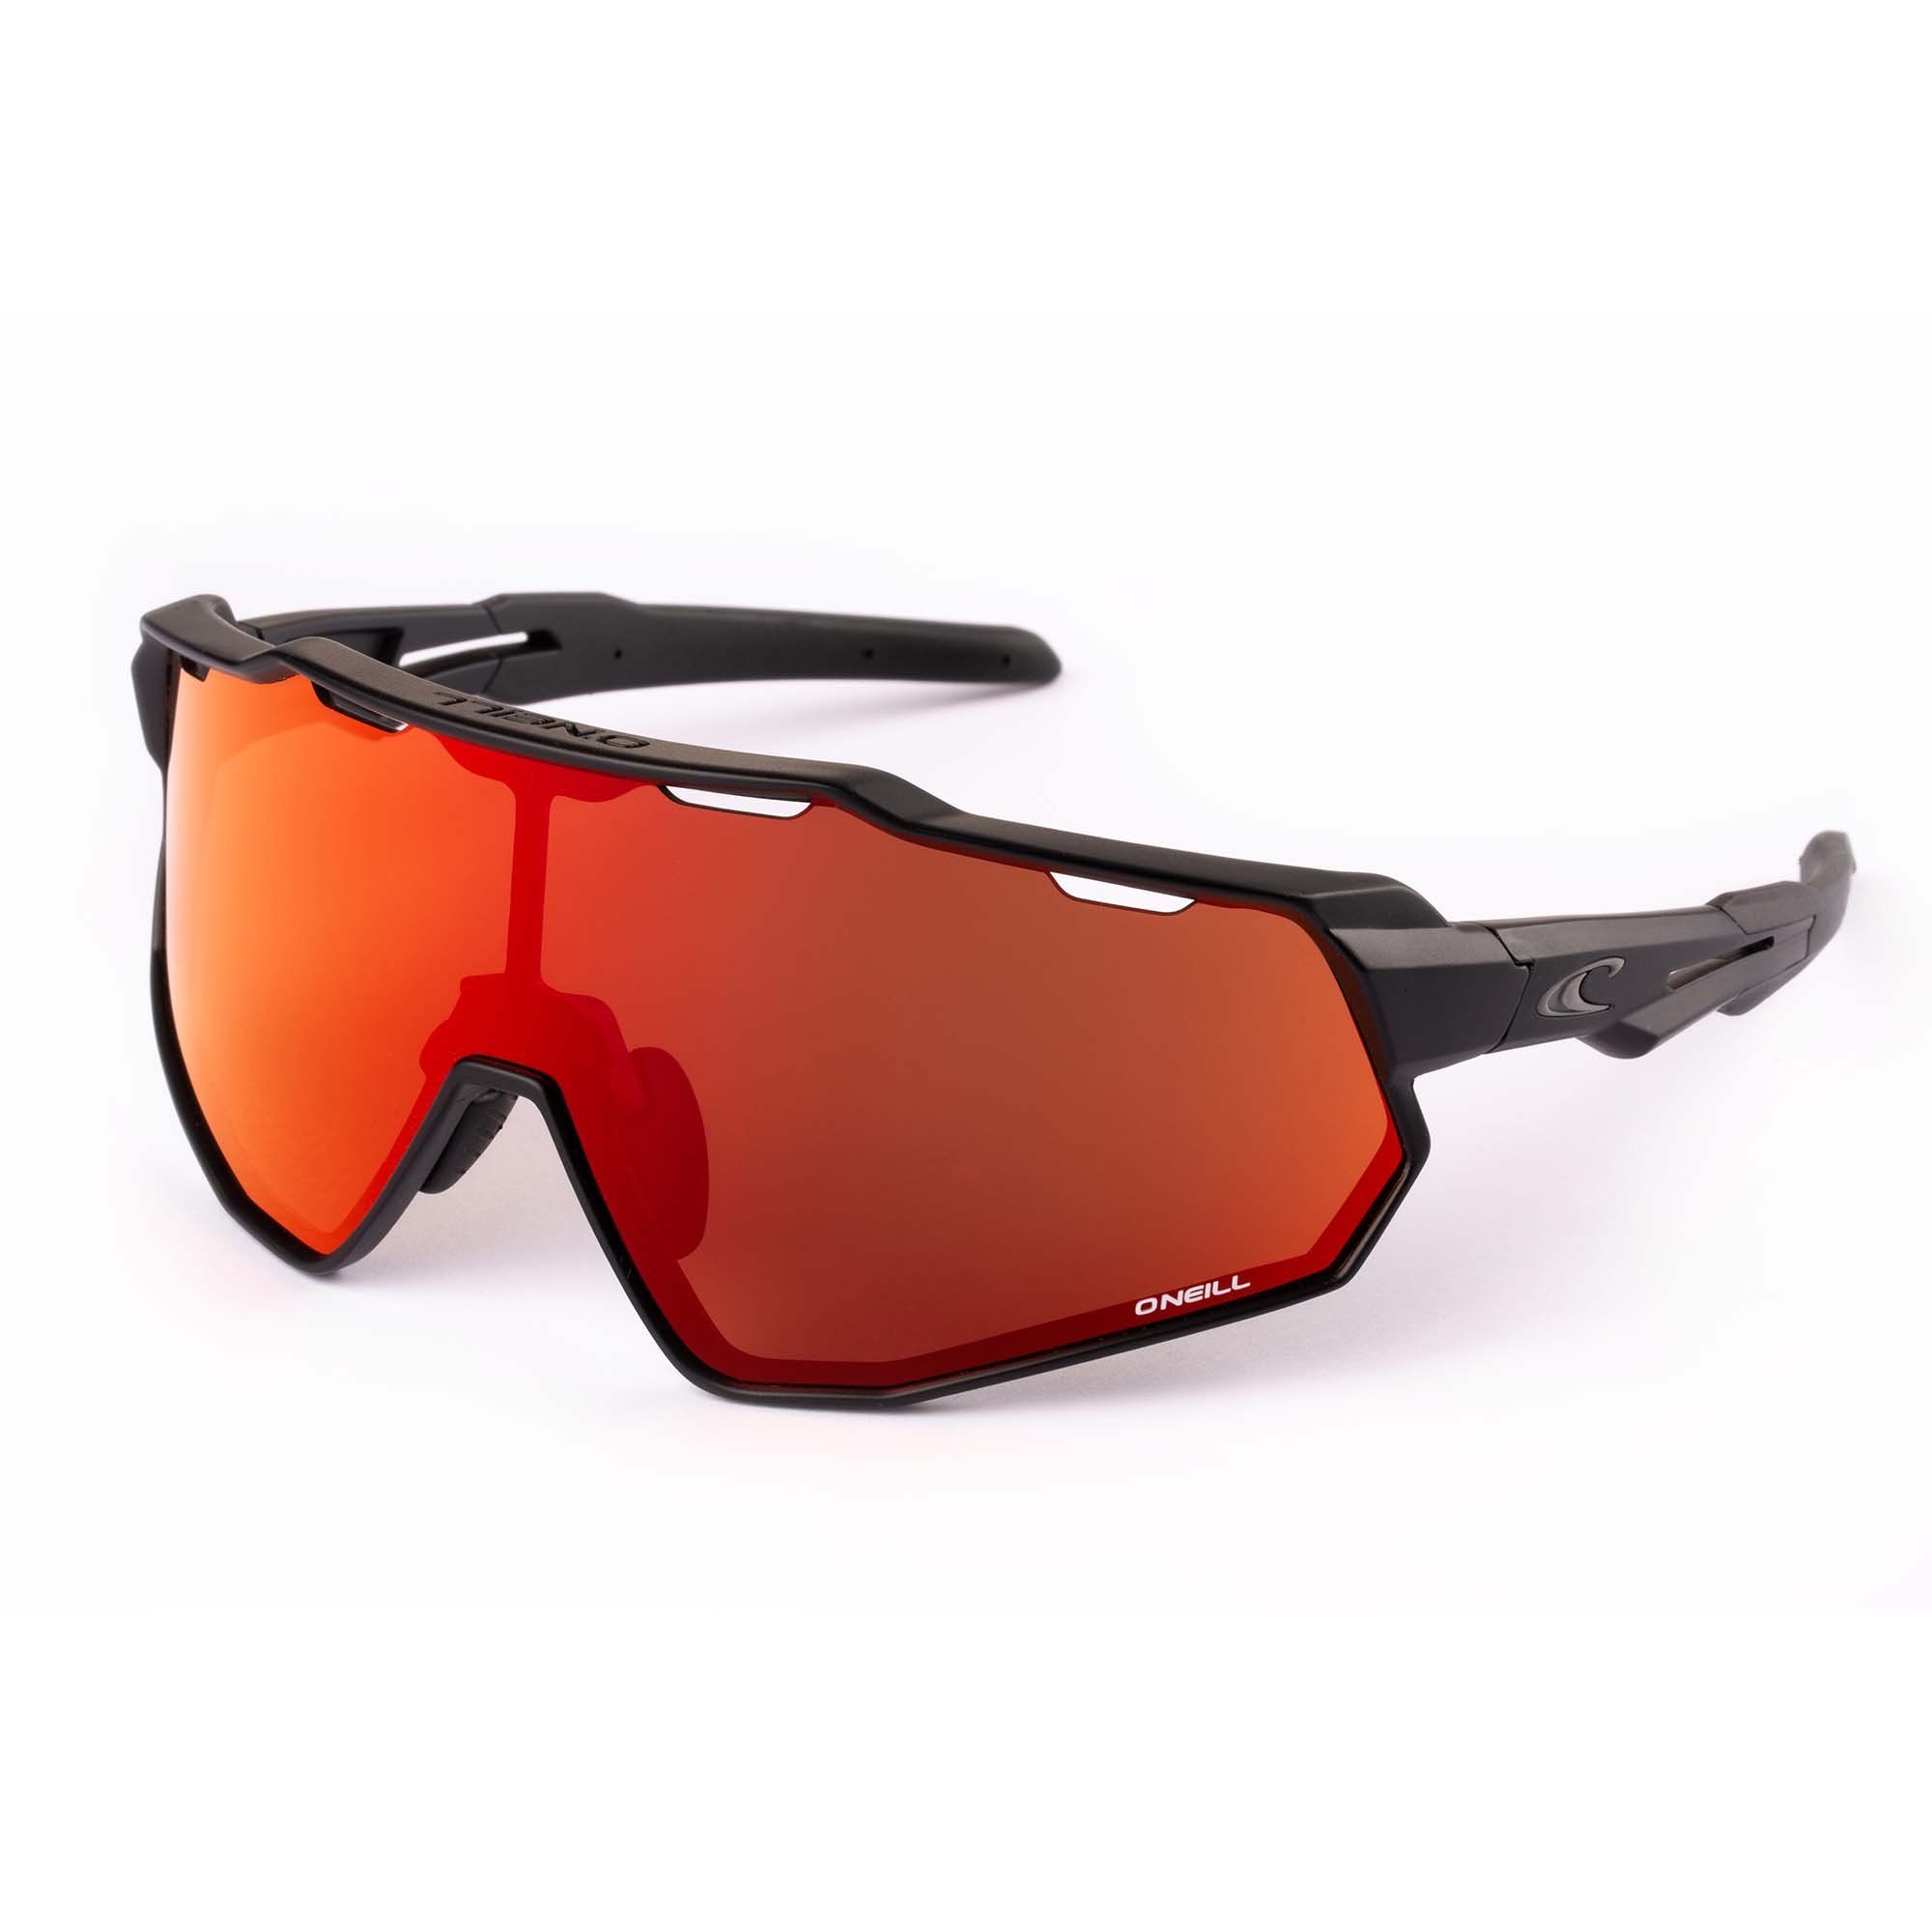 9040-2.0 104  Sport Mask Visor Sunglasses 